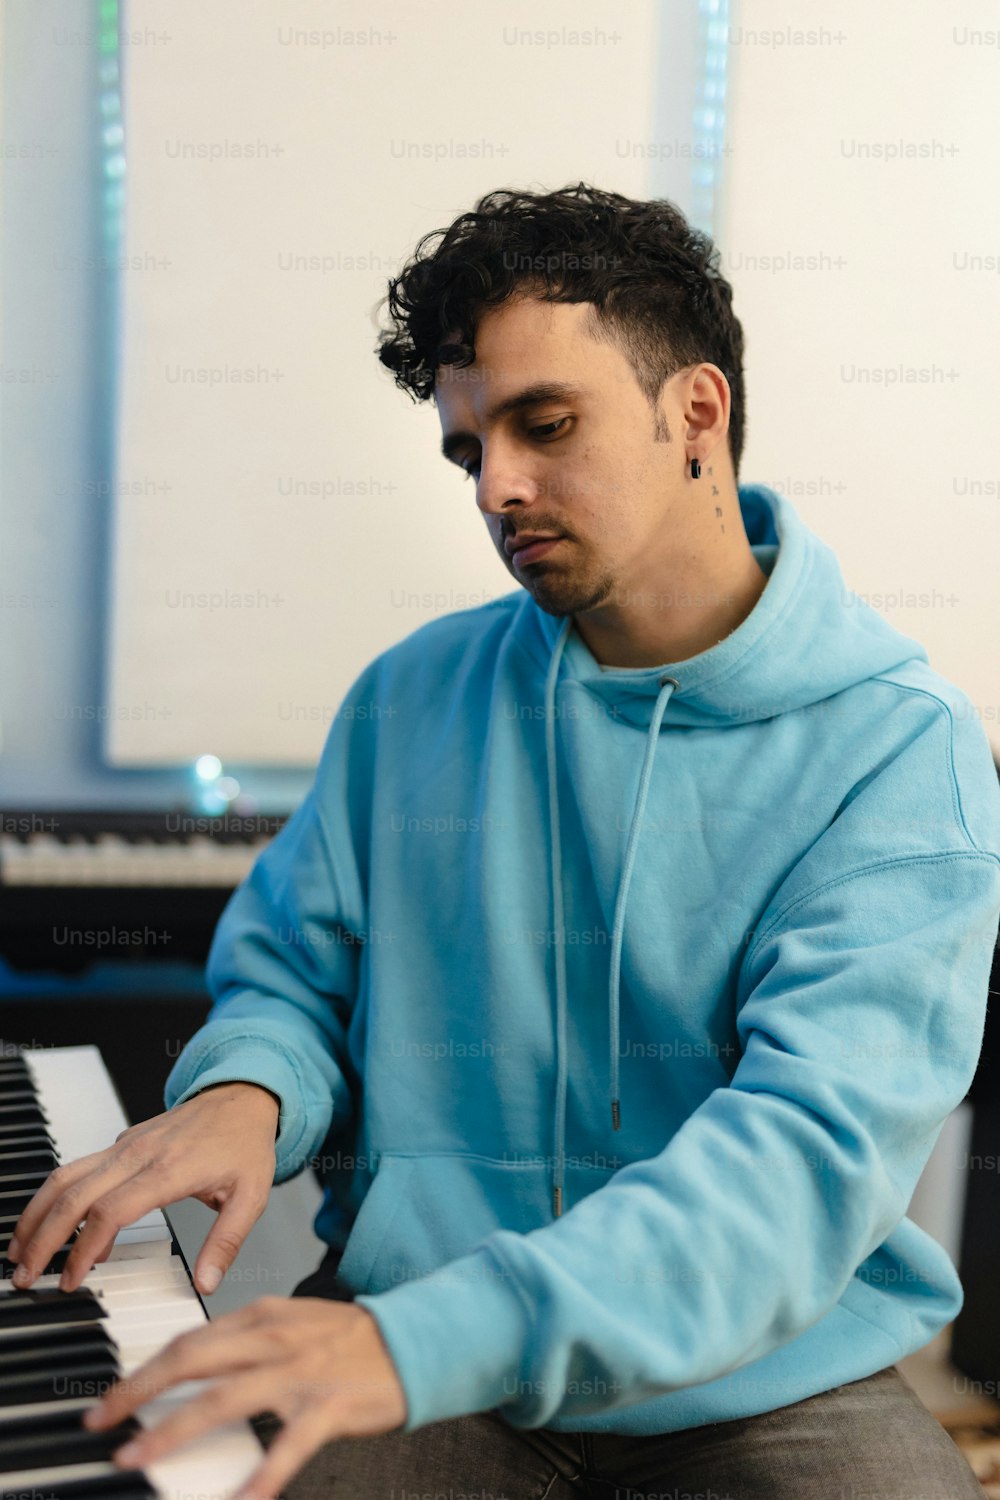 Un uomo in una felpa blu con cappuccio che suona un pianoforte